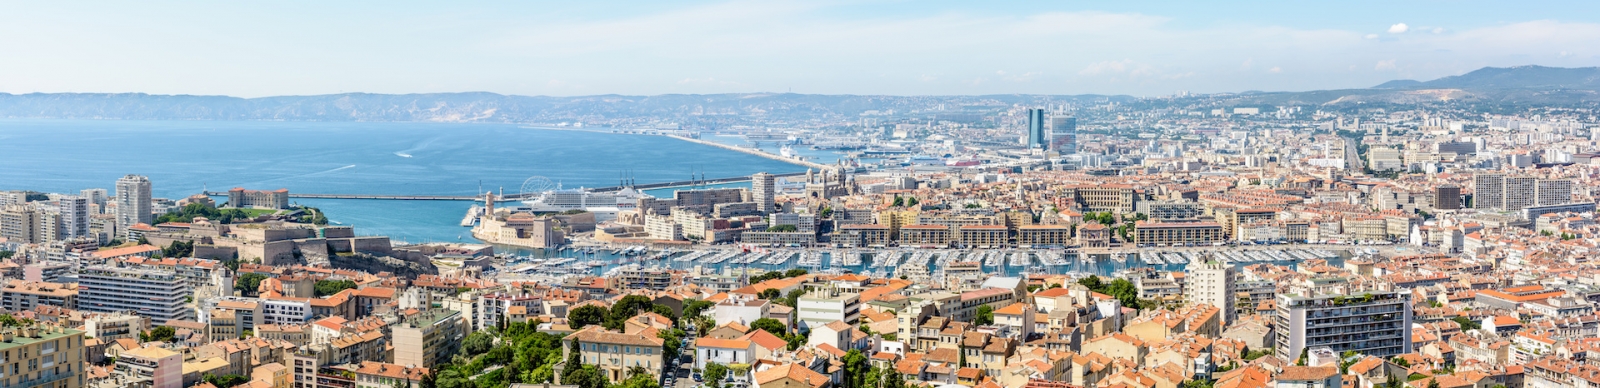 Панорамный вид на Старый порт, исторический центр Ле-Панье, Большой морской порт Марселя, побережье и северные районы вдалеке.